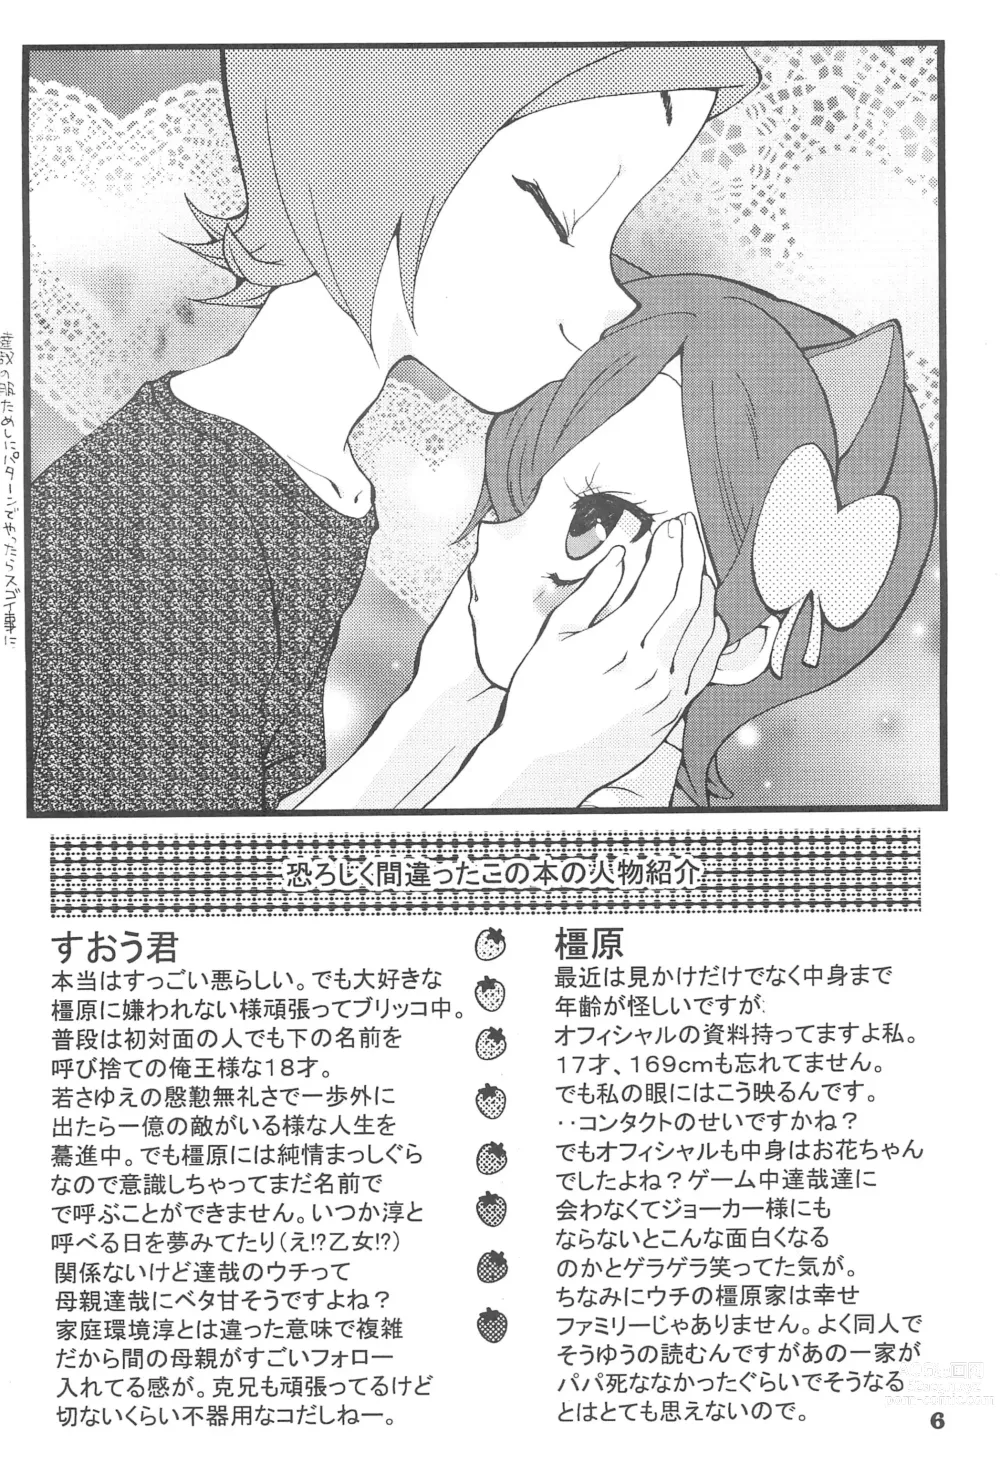 Page 8 of doujinshi Yuuyake Nyan nyan